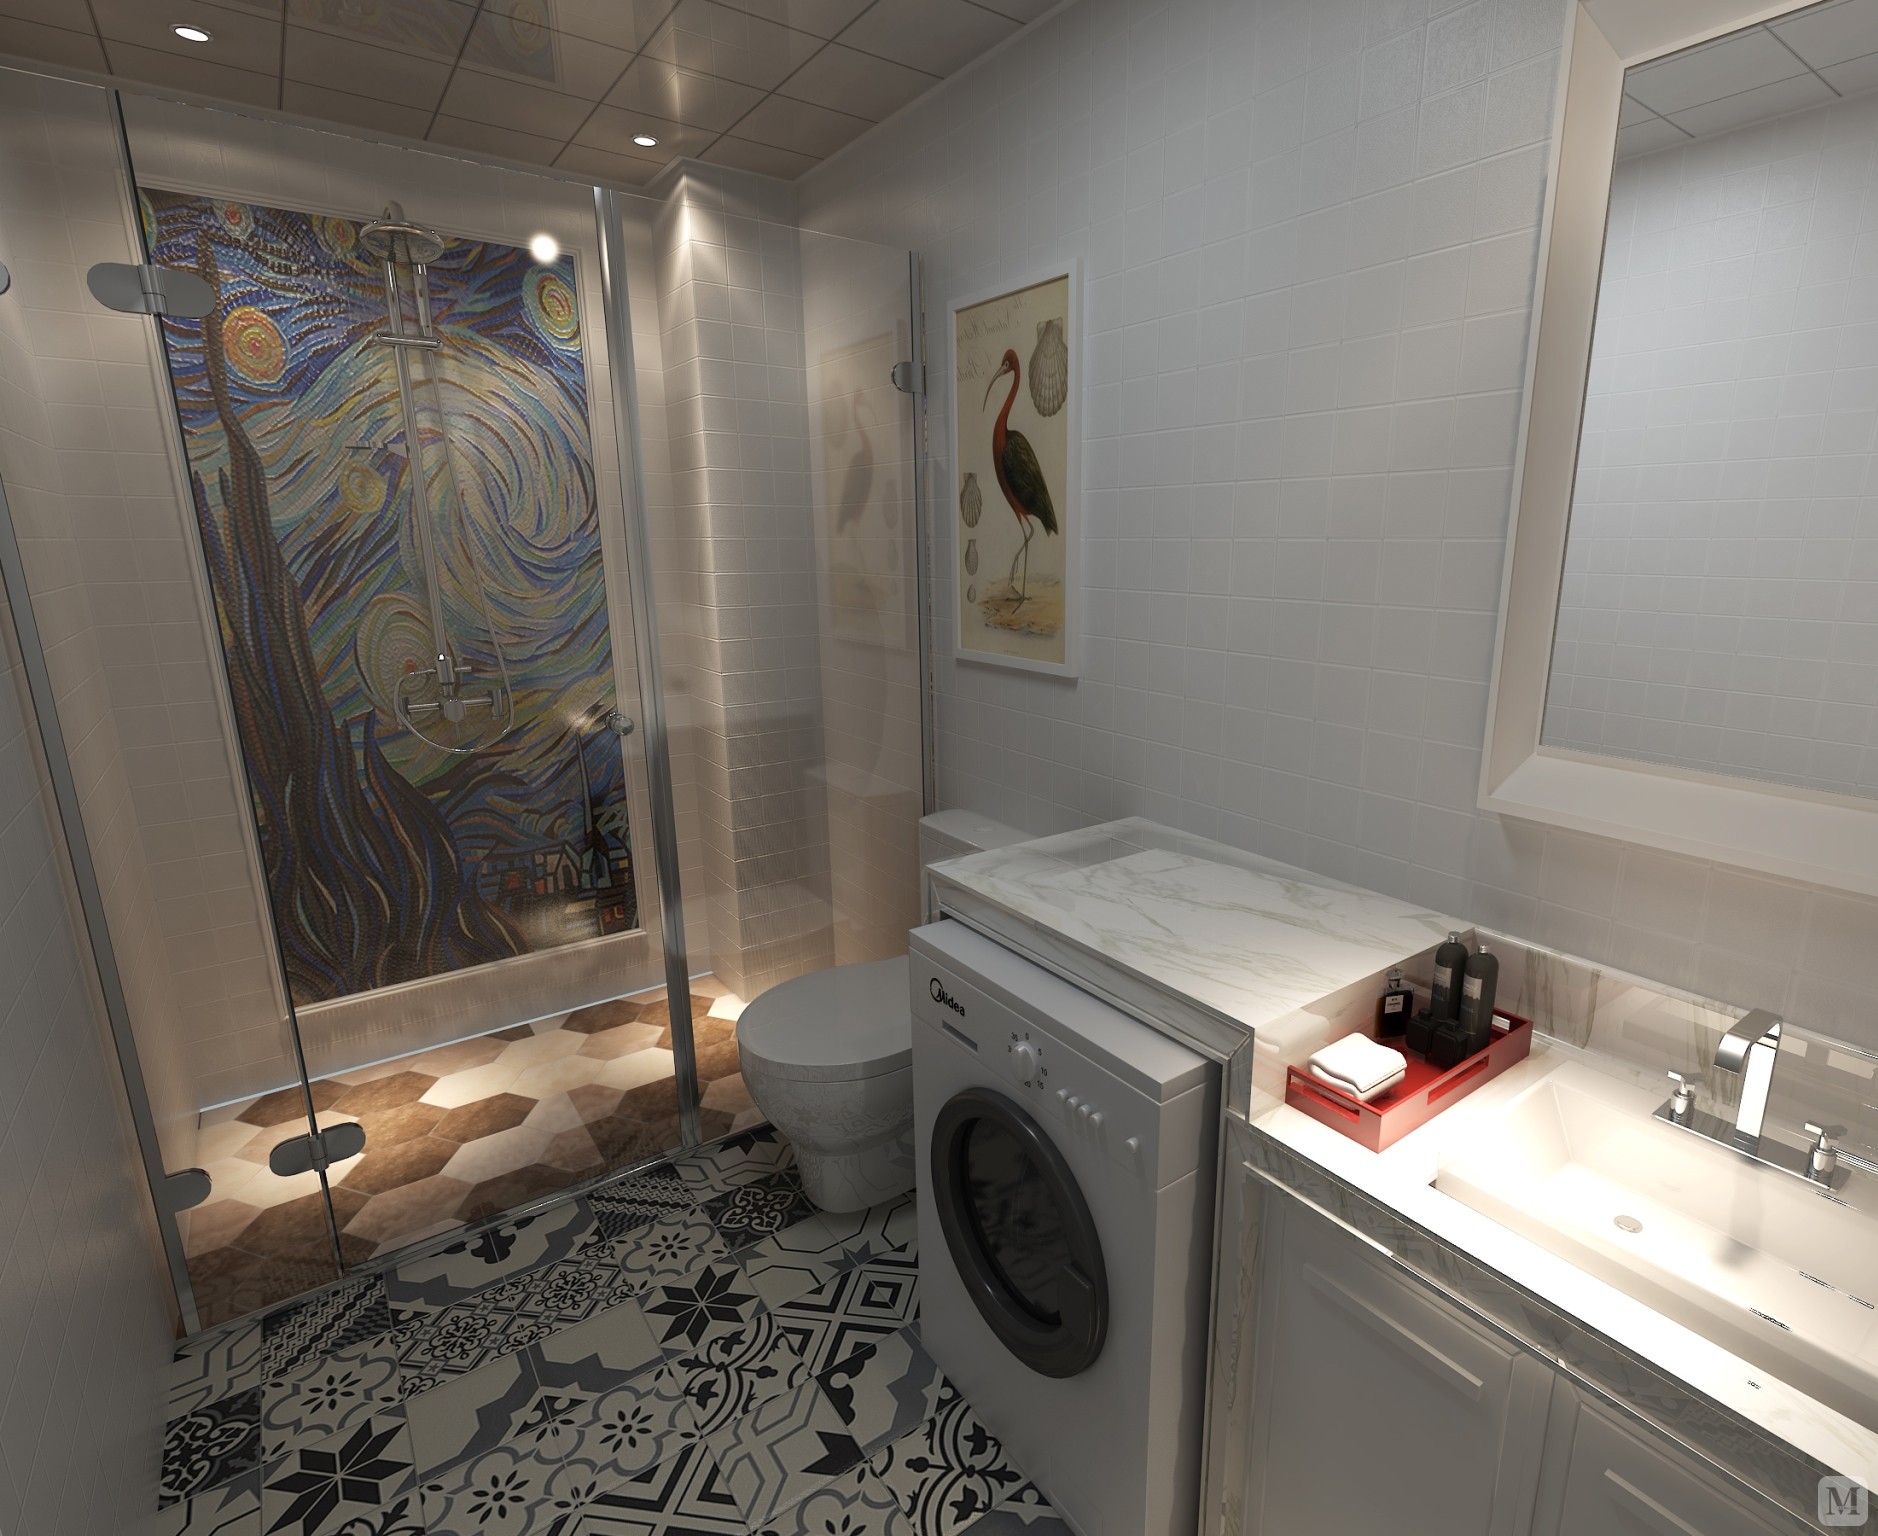 卫生间淋浴墙是梵高的星空马赛克粘贴（业主自选的），让卫生间充满了艺术气息，几种材料的组合，使得空间充满了想象力。